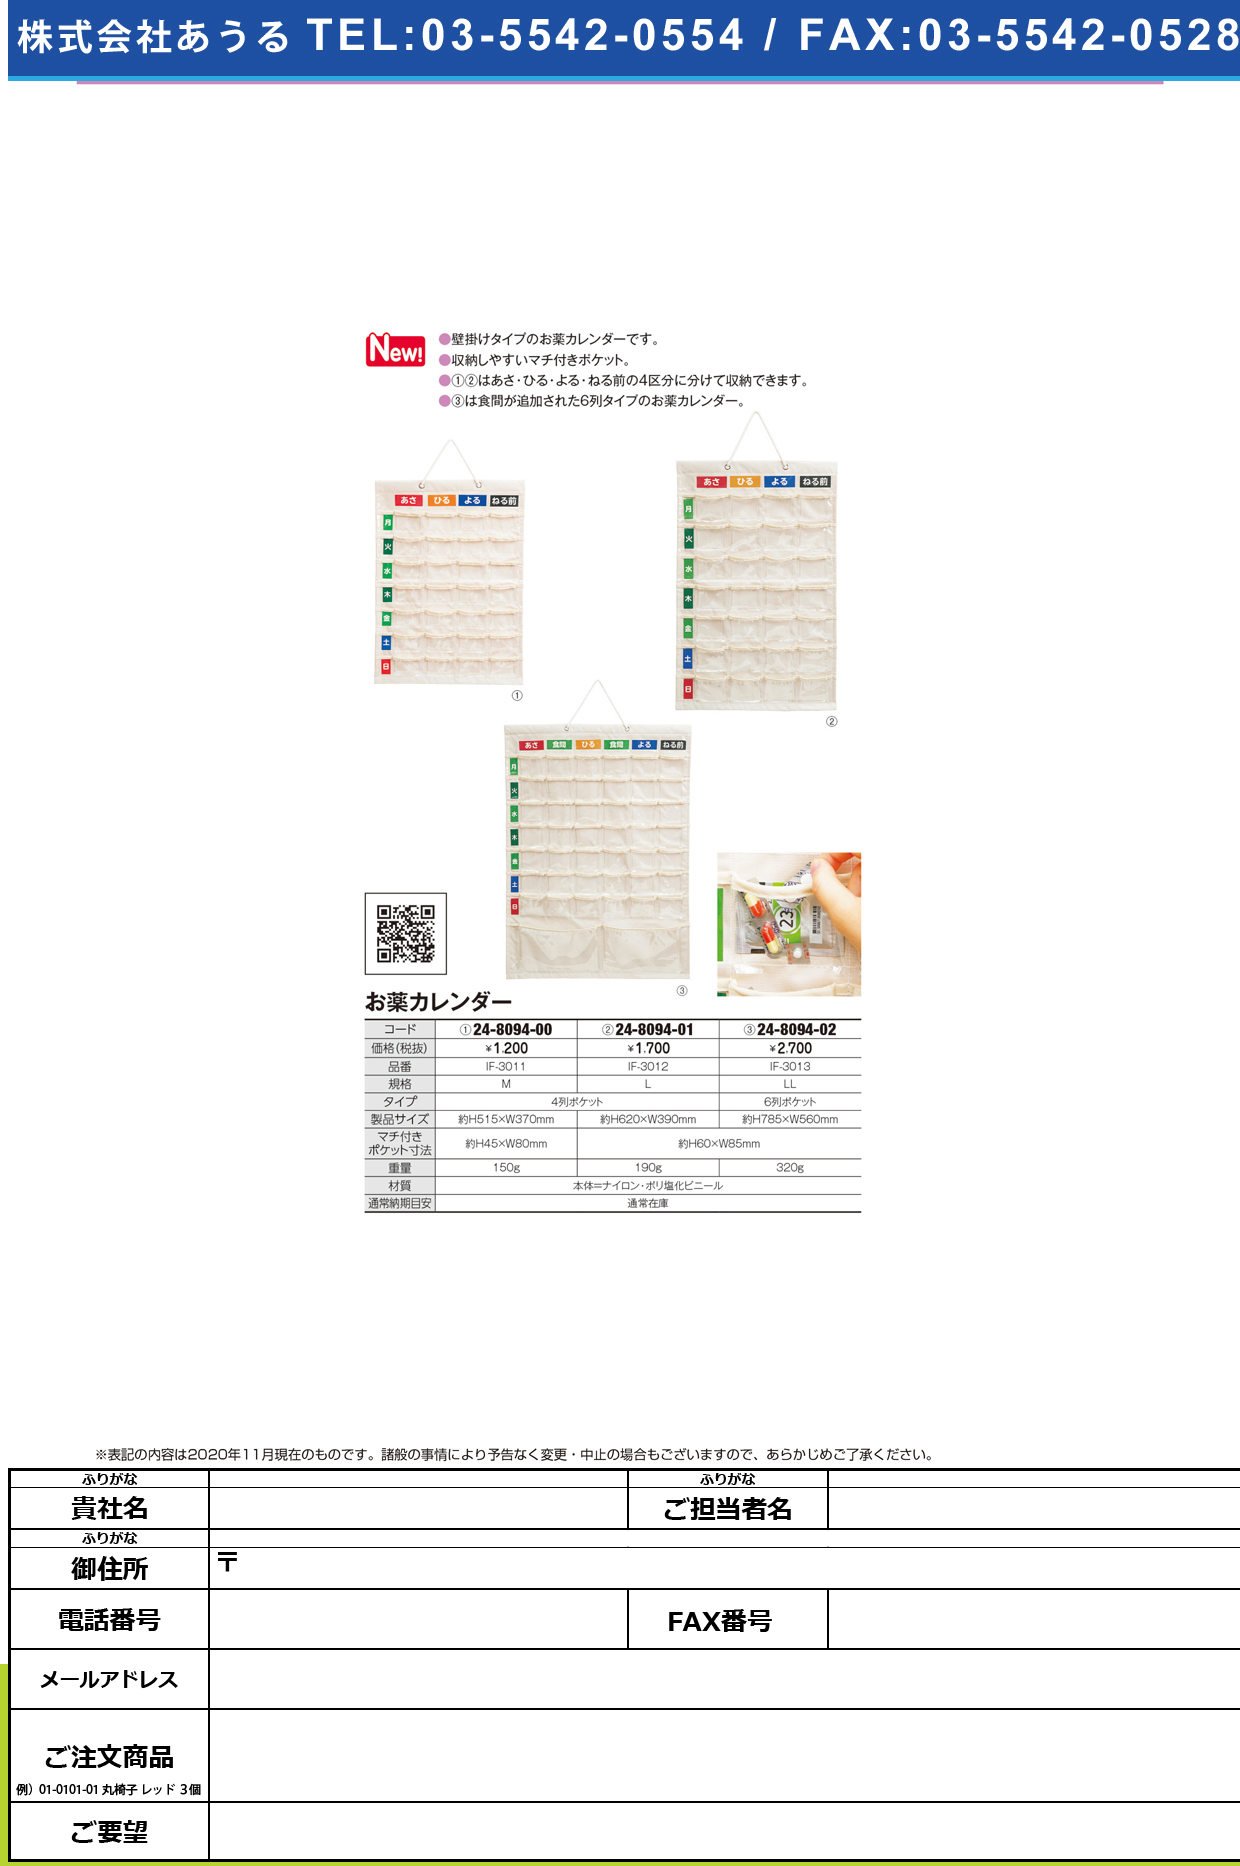 お薬カレンダー(壁掛けタイプ) IF-3011(Mサイズ)IF-3011(Mｻｲｽﾞ)(24-8094-00)【フエル販売】(販売単位:1)